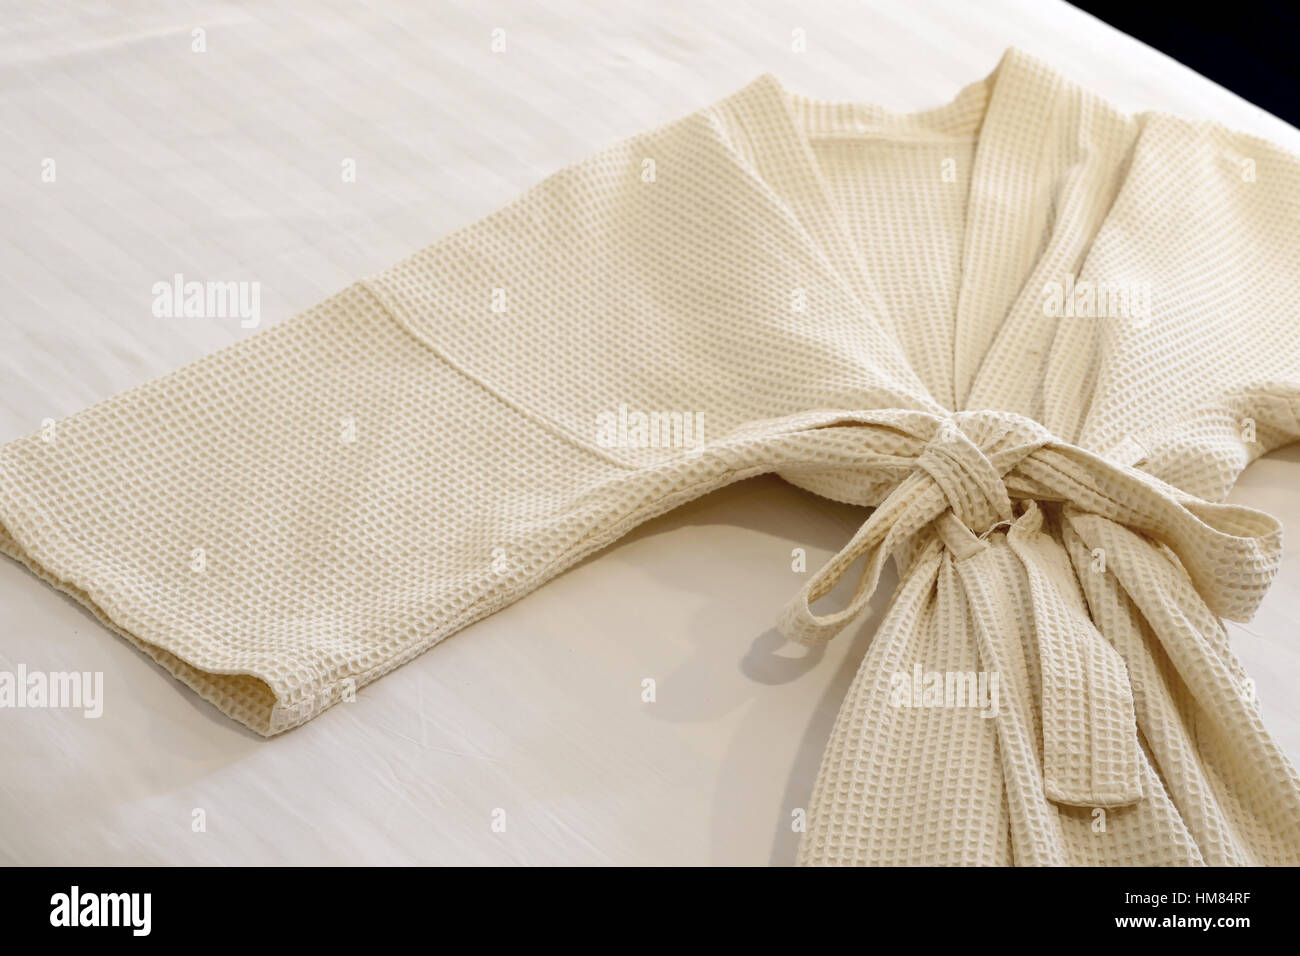 white bathrobe on the bed Stock Photo